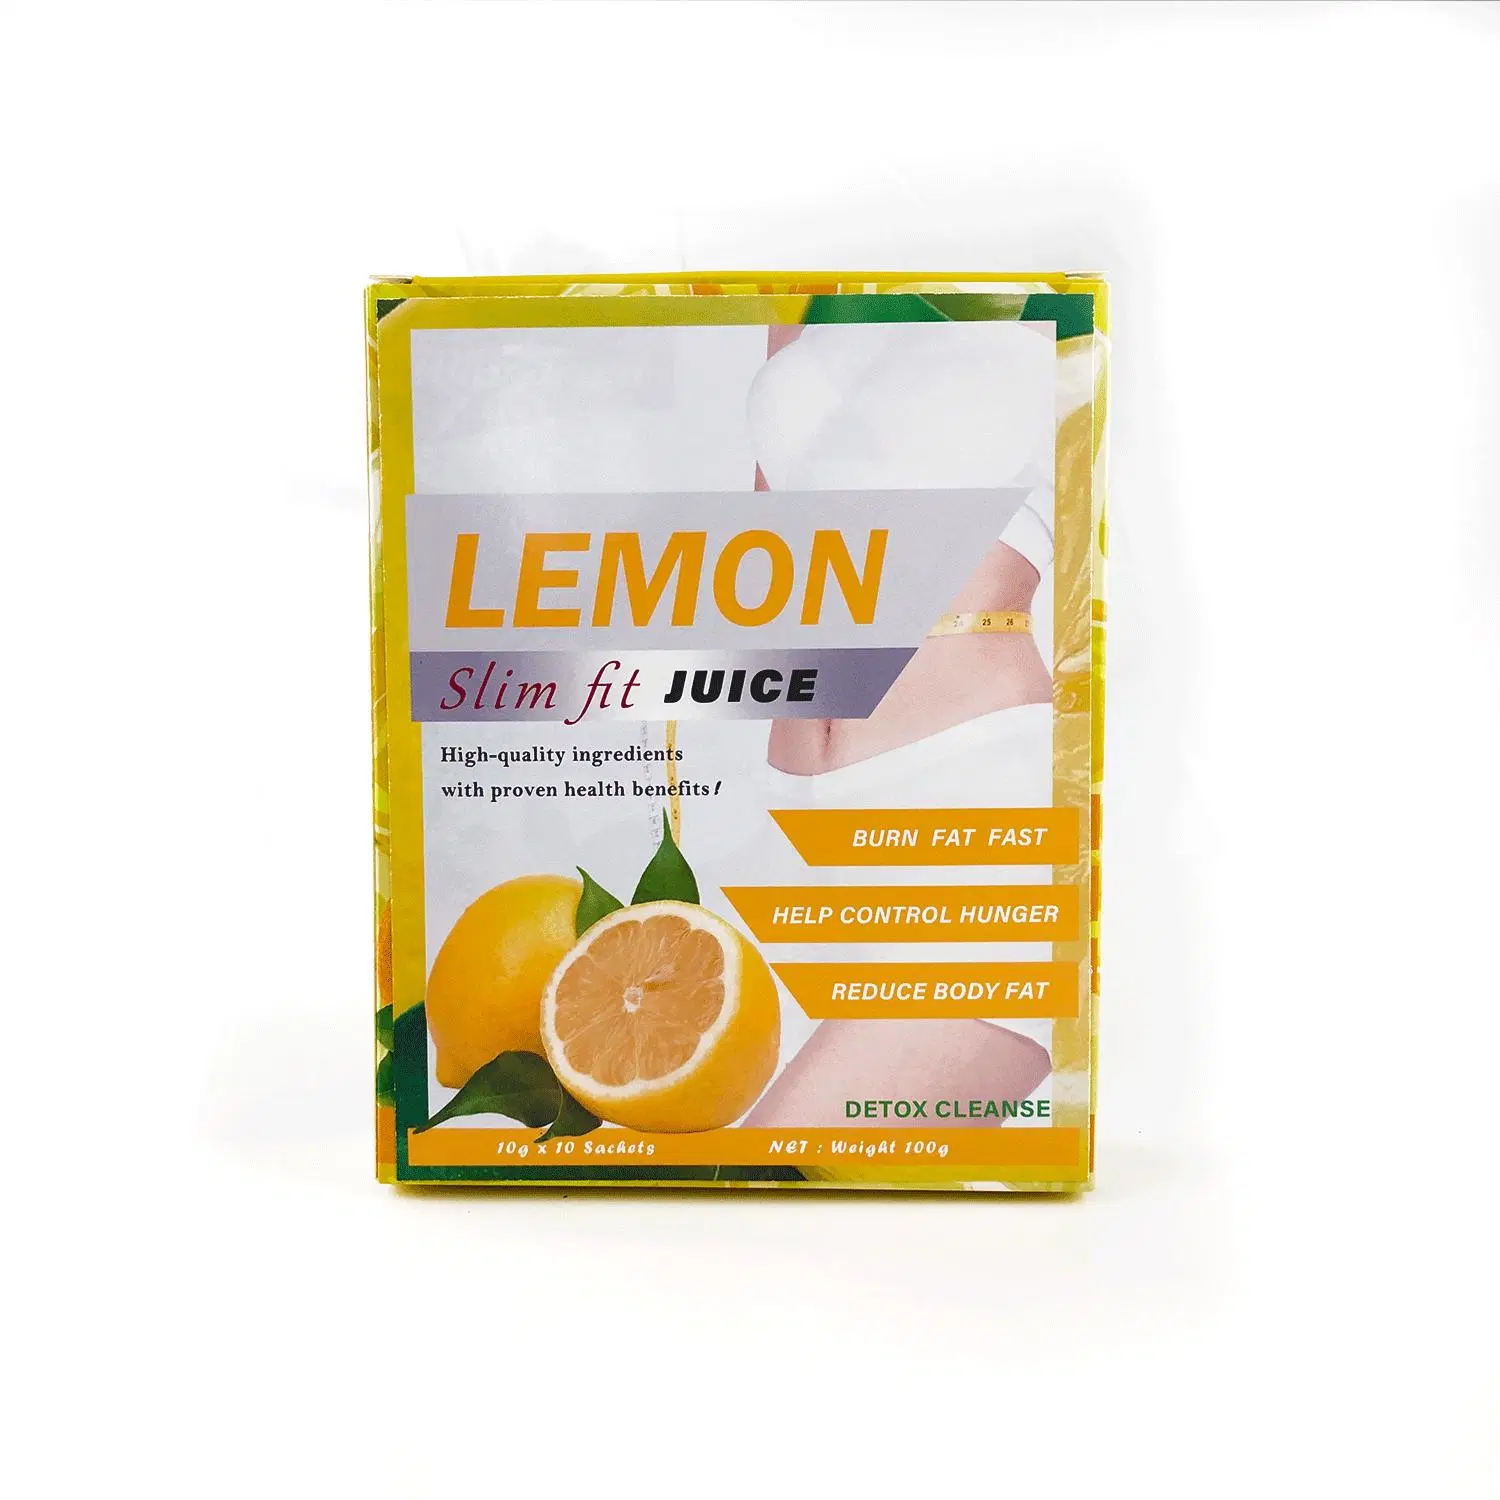 فقدان الوزن عصير الليمون الليمون التوكسينات في الجسم سميكة عصير لتشكيل الجسم والحفاظ على لياقتك